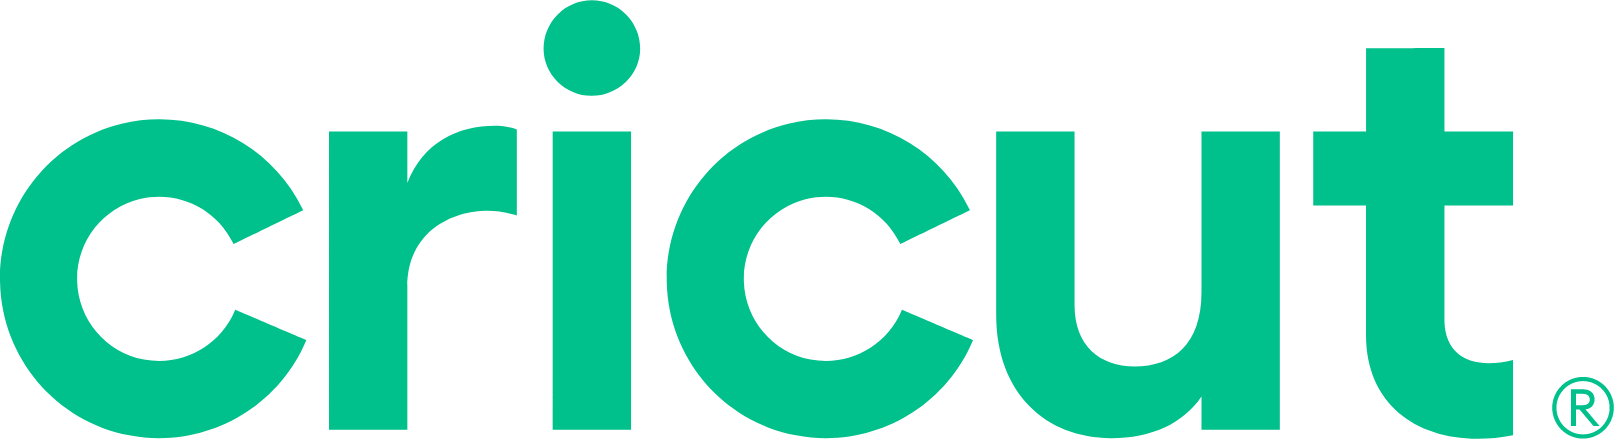 Cricut logo large (transparent PNG)